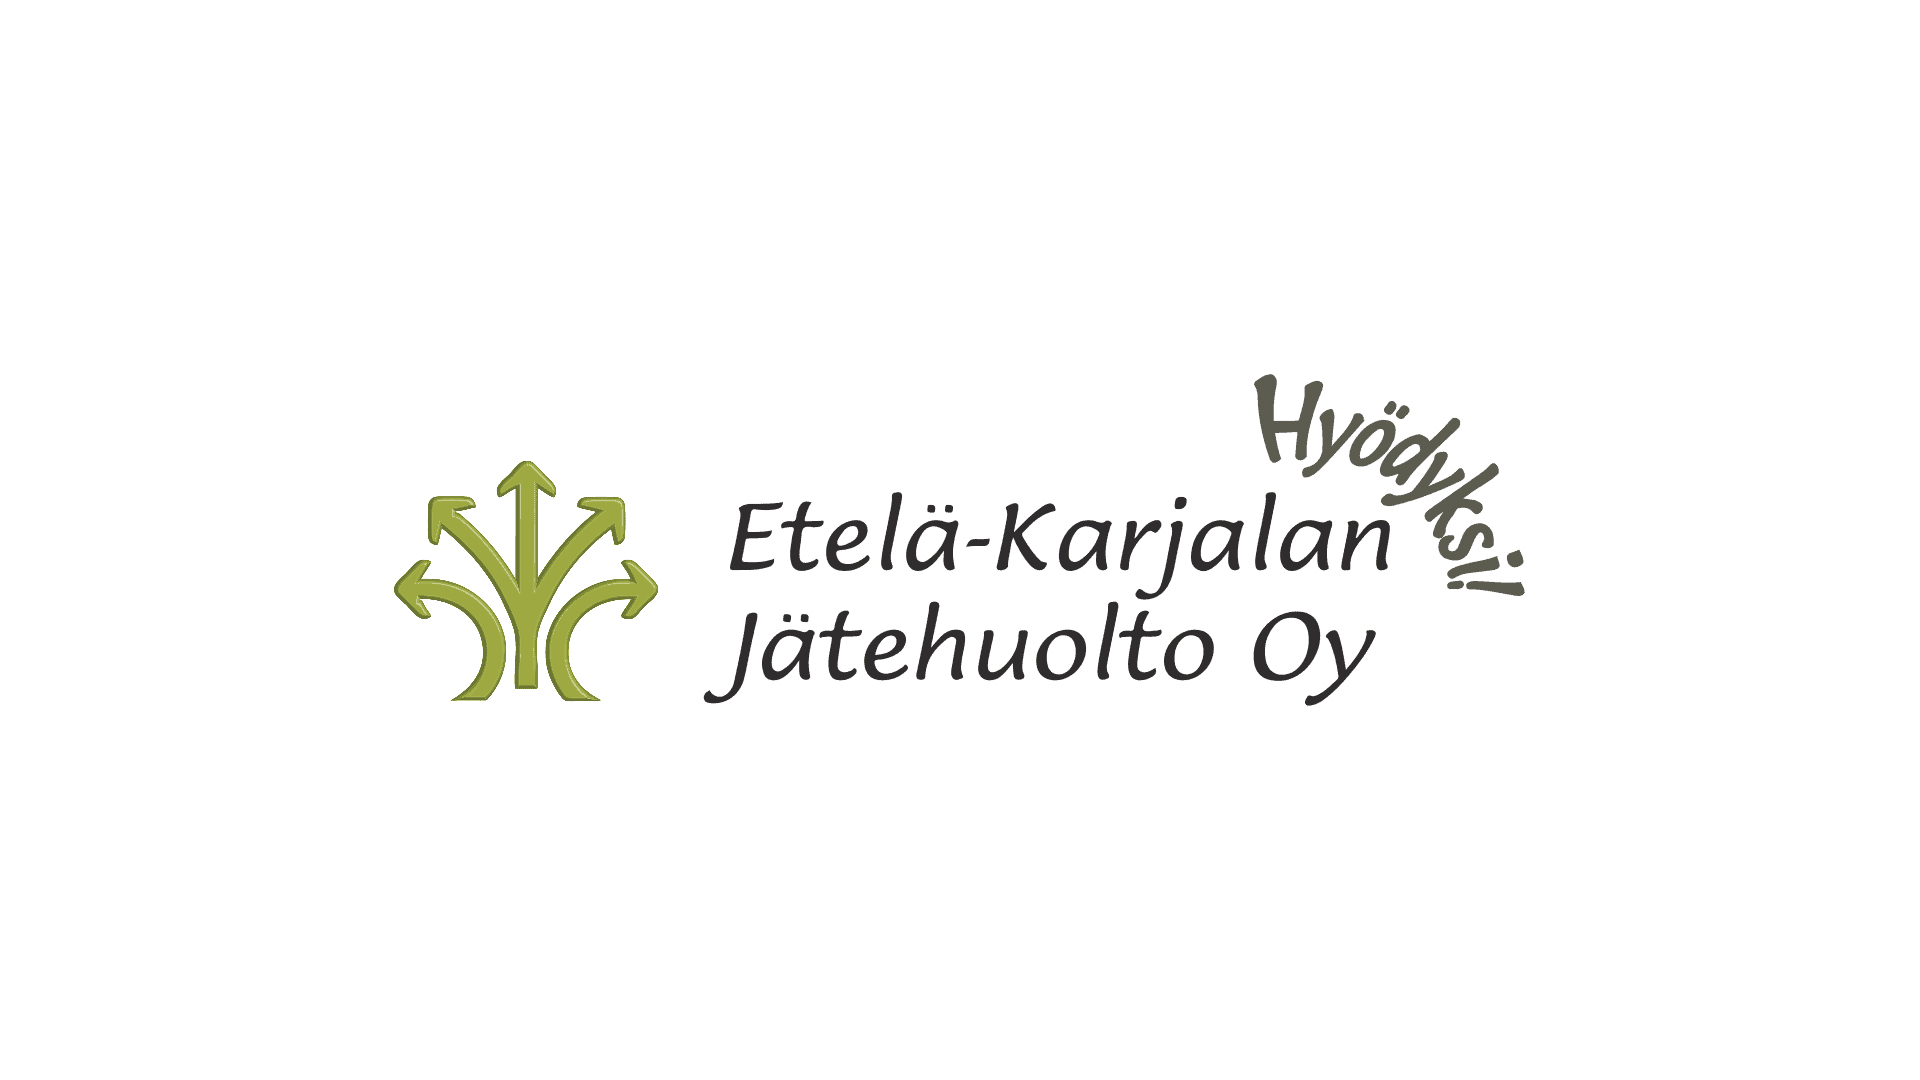 Etelä-Karjalan jätehuollon logo